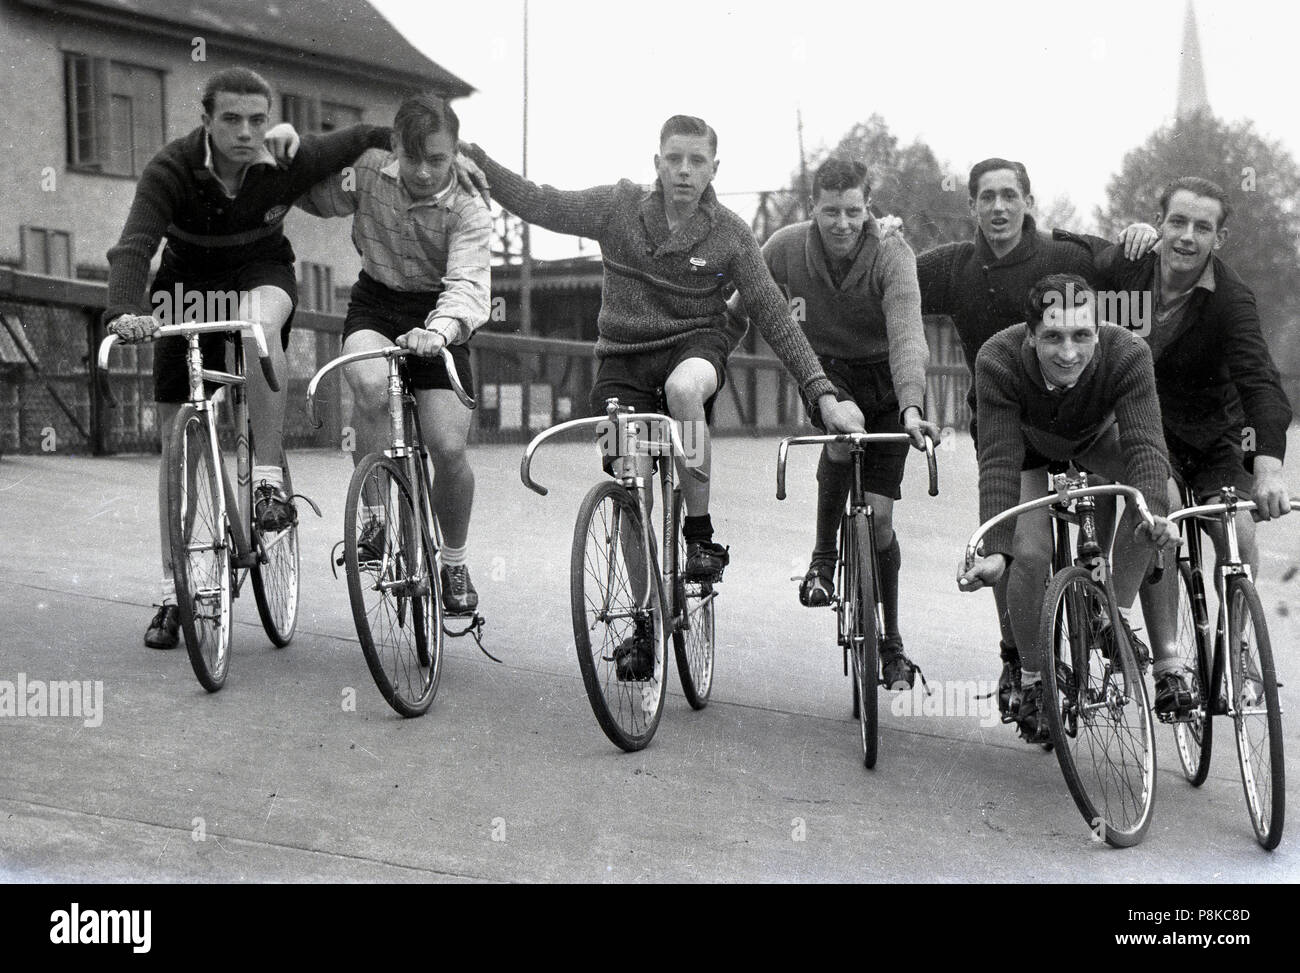 1950er Jahre, Gruppe männlicher Bahnradfahrer Line-up zusammen auf ihre Fahrräder auf dem Bankkonto Anschluss außerhalb, England, UK. In der Sport der Schiene Radfahren, die an speziell dafür gebauten banked Titel oder velodromes, die Räder haben keine Bremsen oder Getriebe oder so ist es eine der reinsten Formen der Bike Racing. Club Track Radfahren war eine beliebte Freizeitbeschäftigung in Großbritannien in den 40er und 50er Jahren. Stockfoto